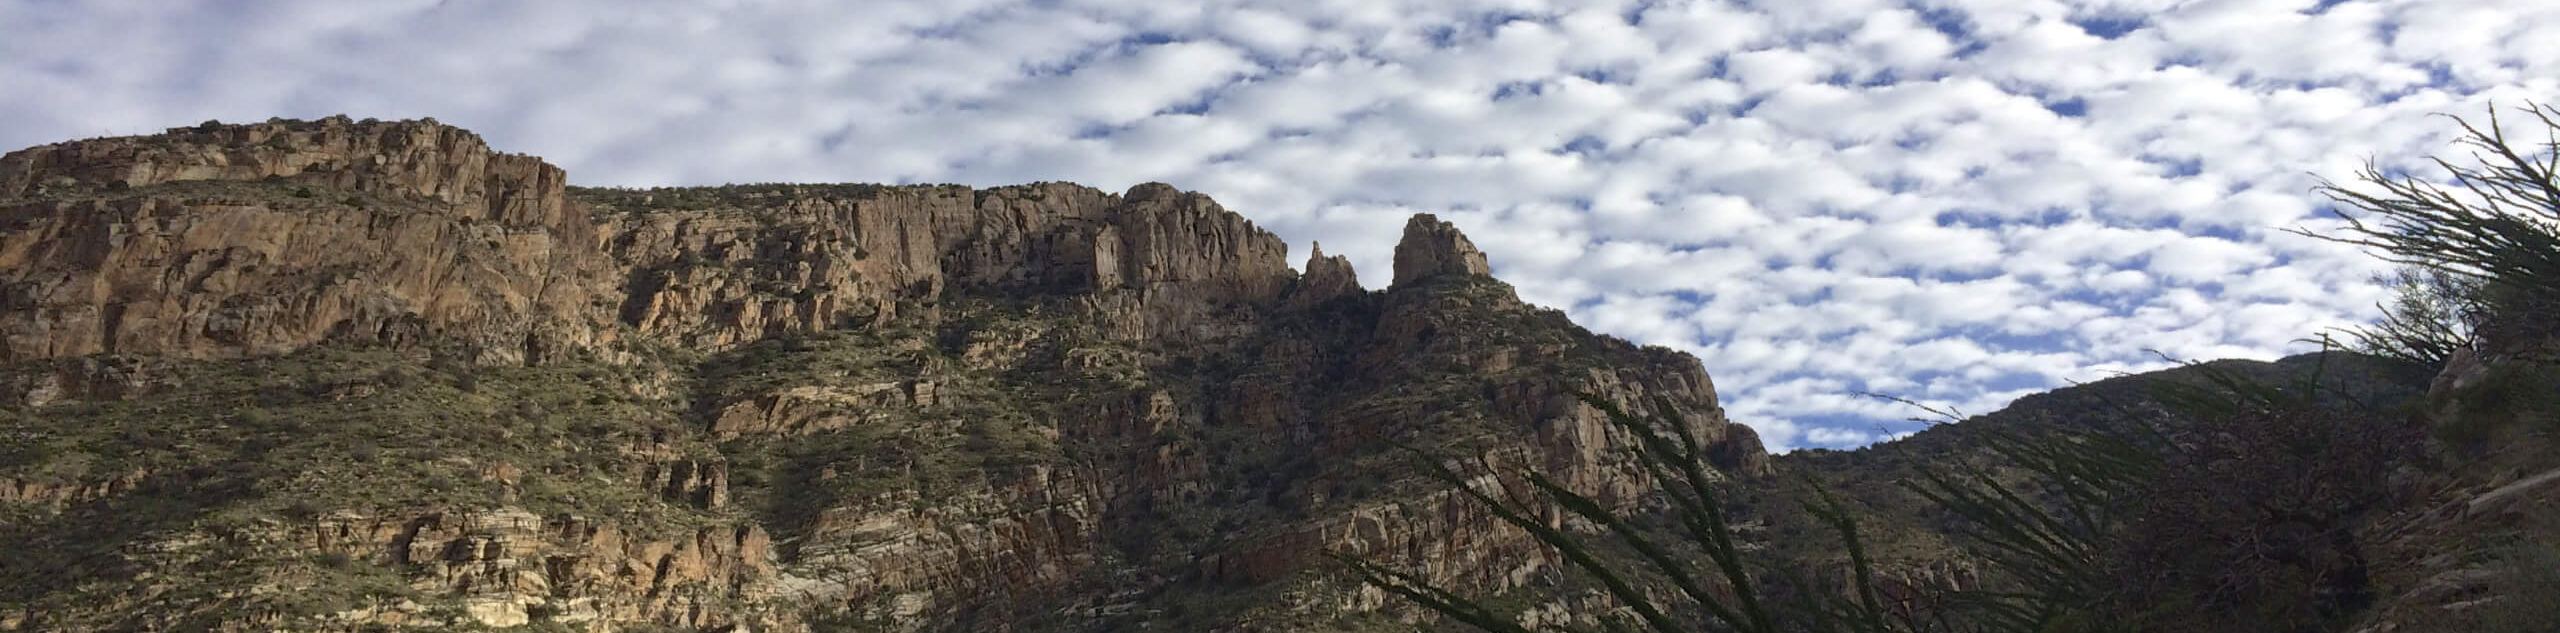 Mount Kimball via Finger Rock Trail